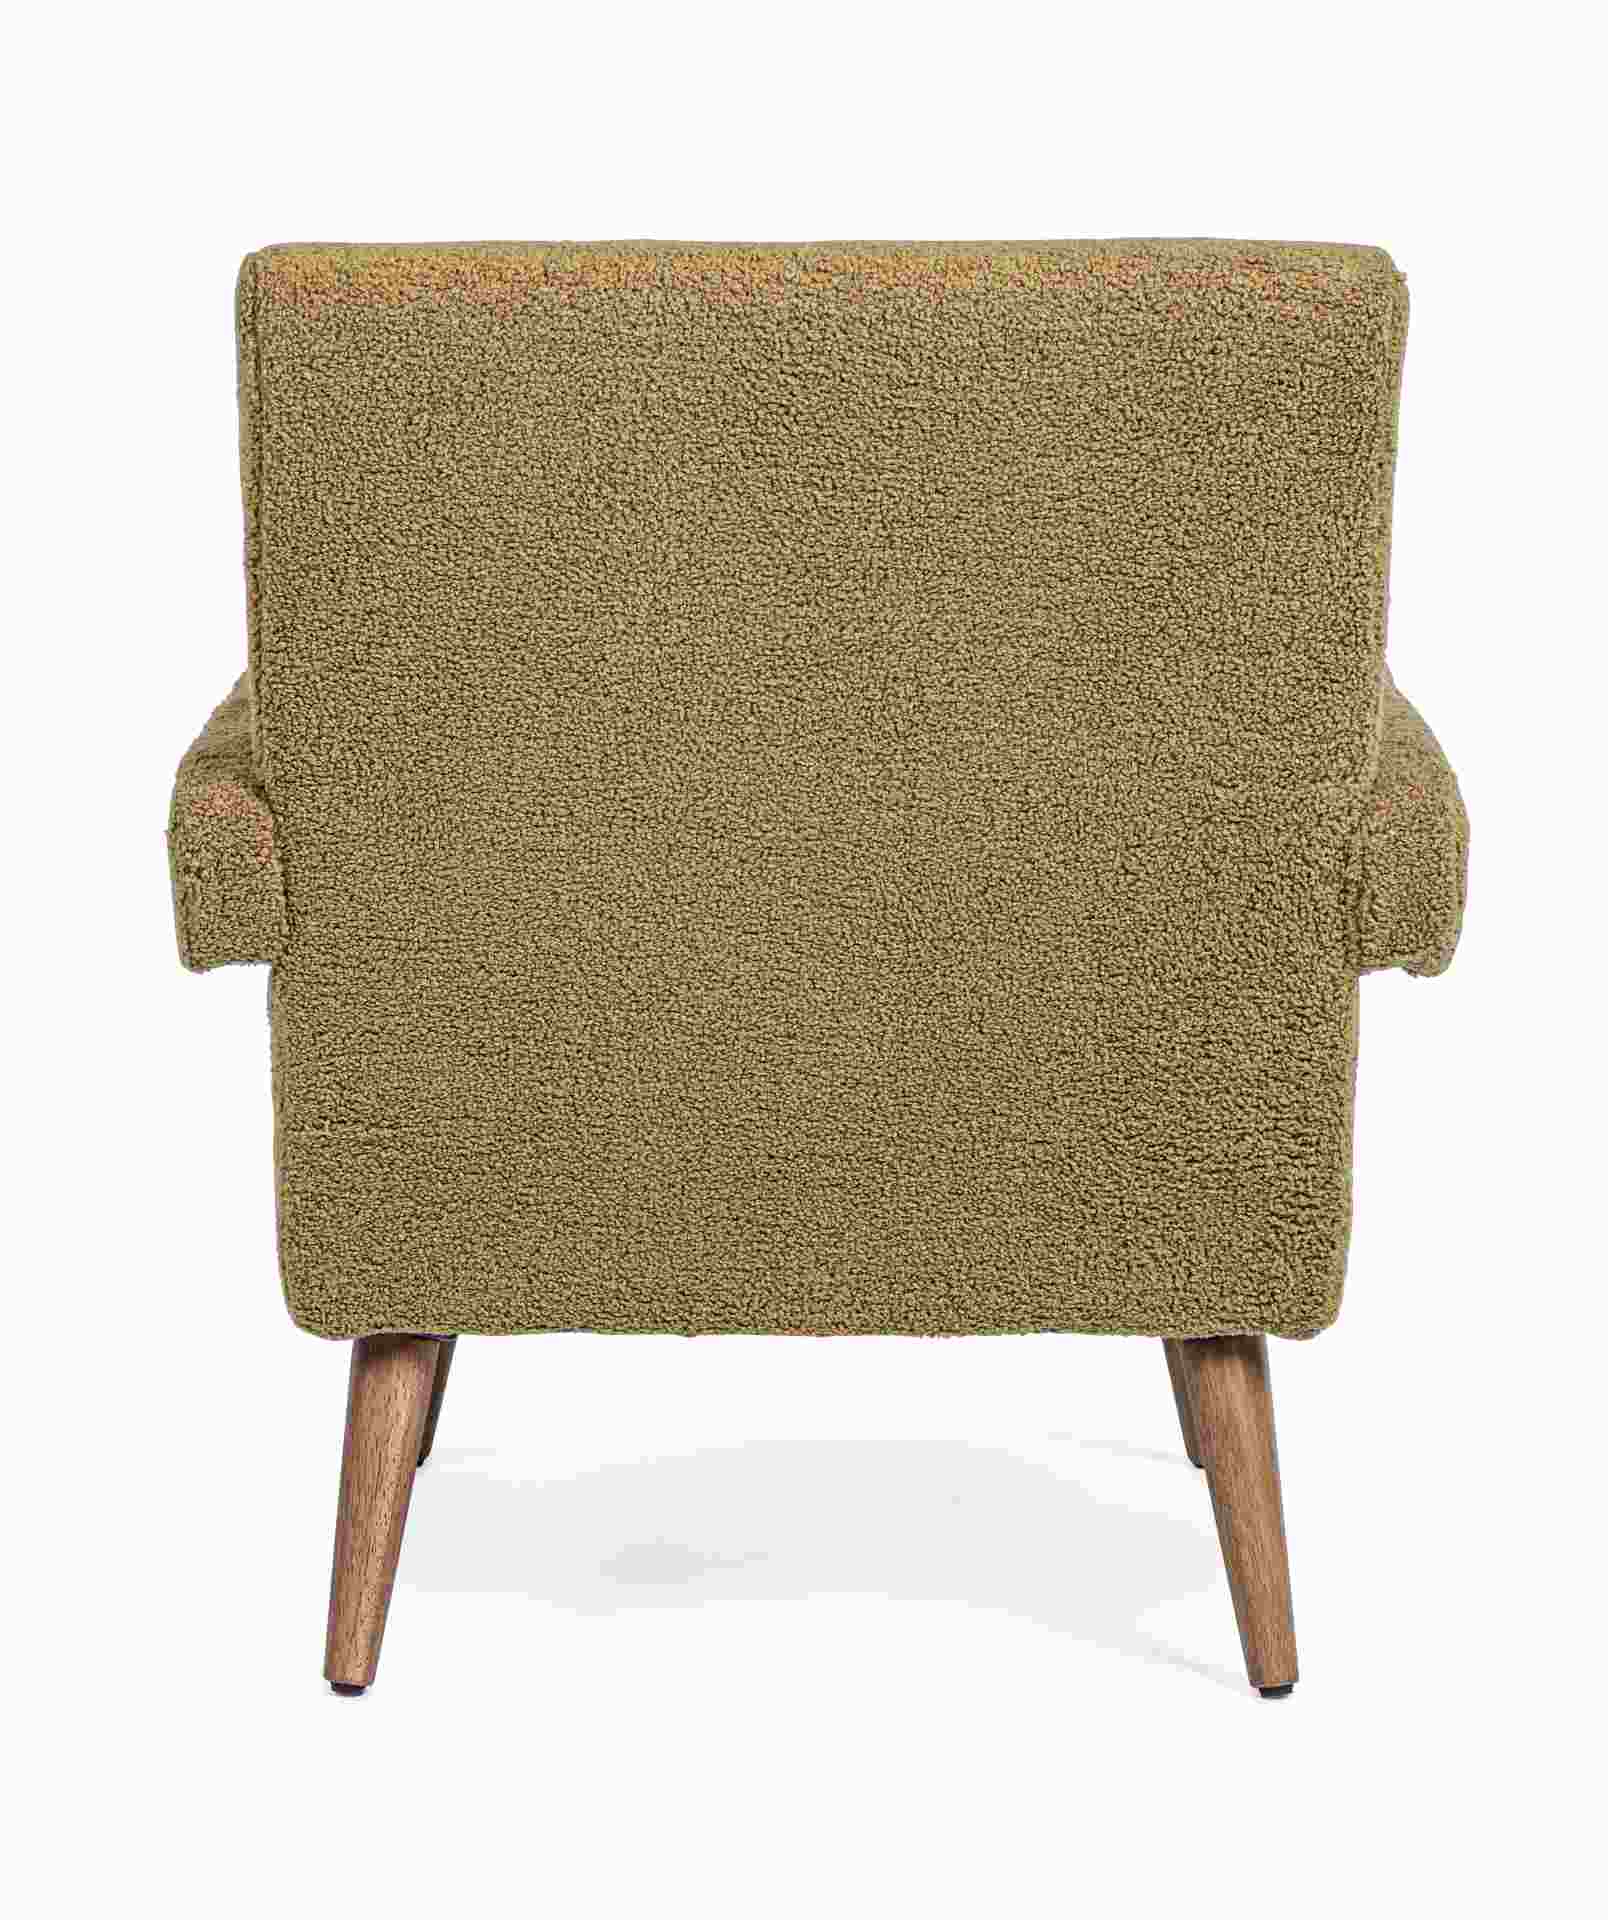 Der Sessel Berna überzeugt mit seinem modernen Design. Gefertigt wurde er aus Stoff in Teddy-Optik, welcher einen braunen Farbton besitzt. Das Gestell ist aus Kautschukholz und hat eine natürliche Farbe. Der Sessel besitzt eine Sitzhöhe von 45 cm. Die Bre